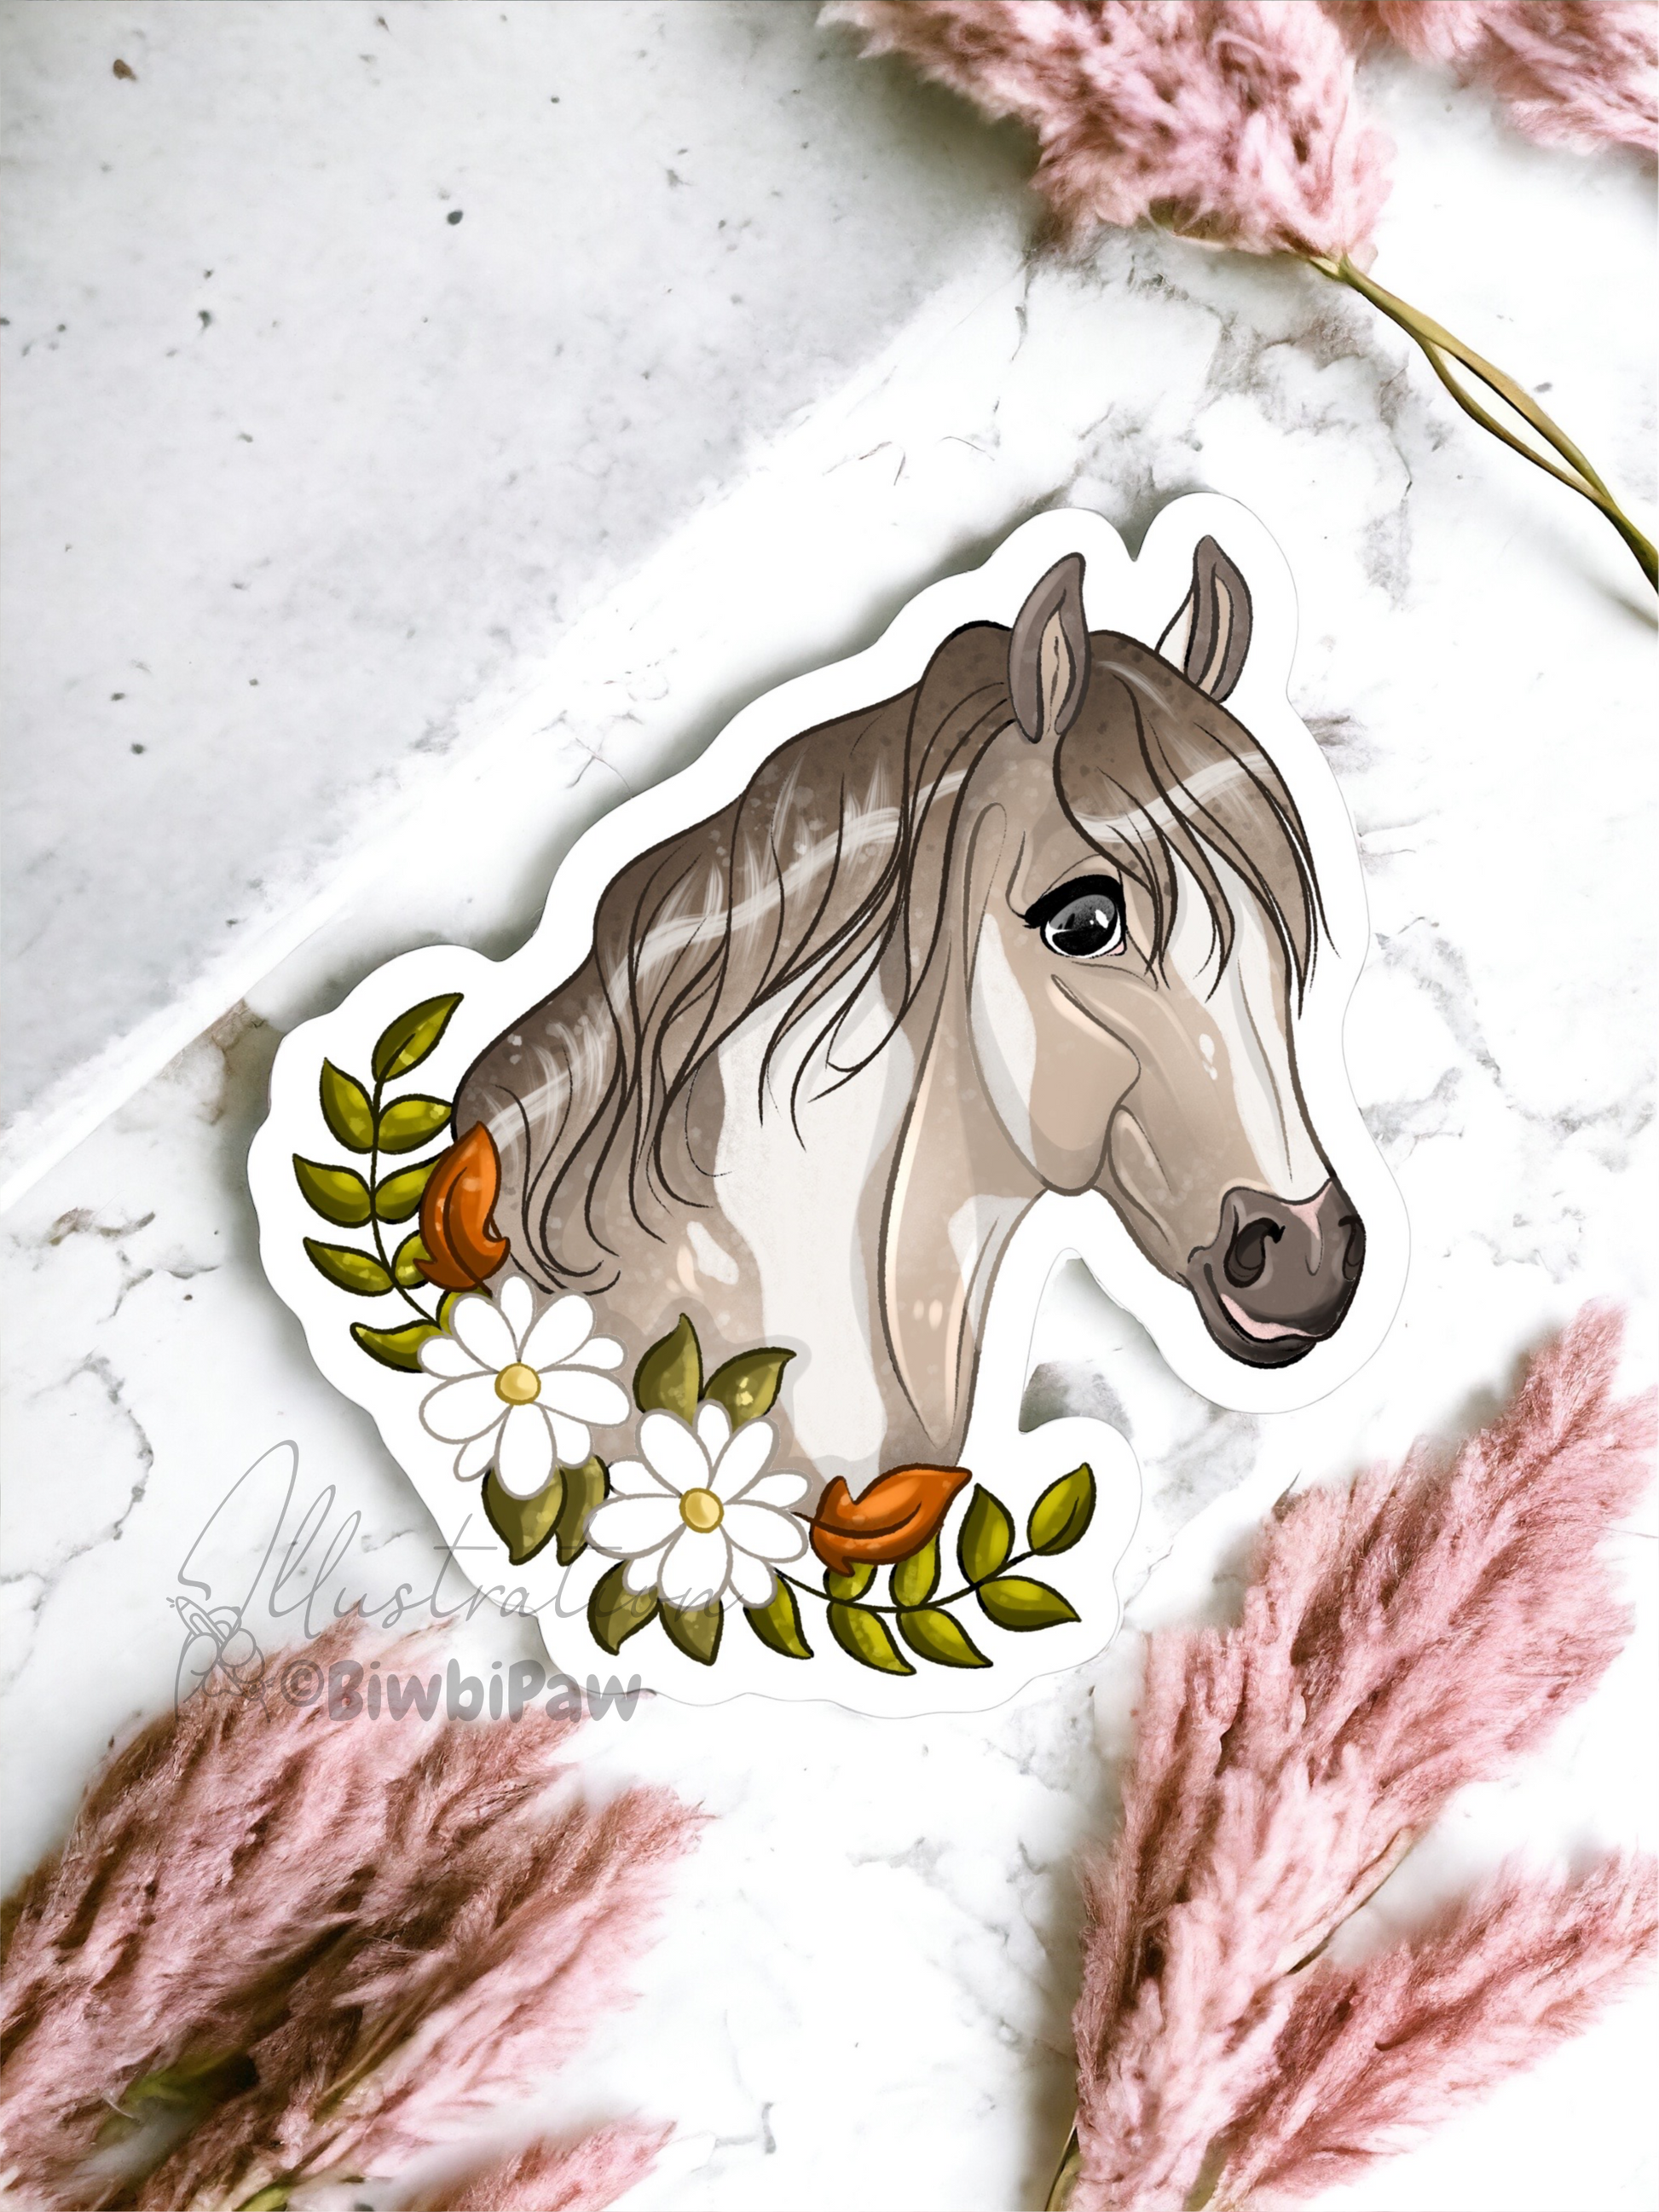 Sticker cheval pie – Biwbi Paw